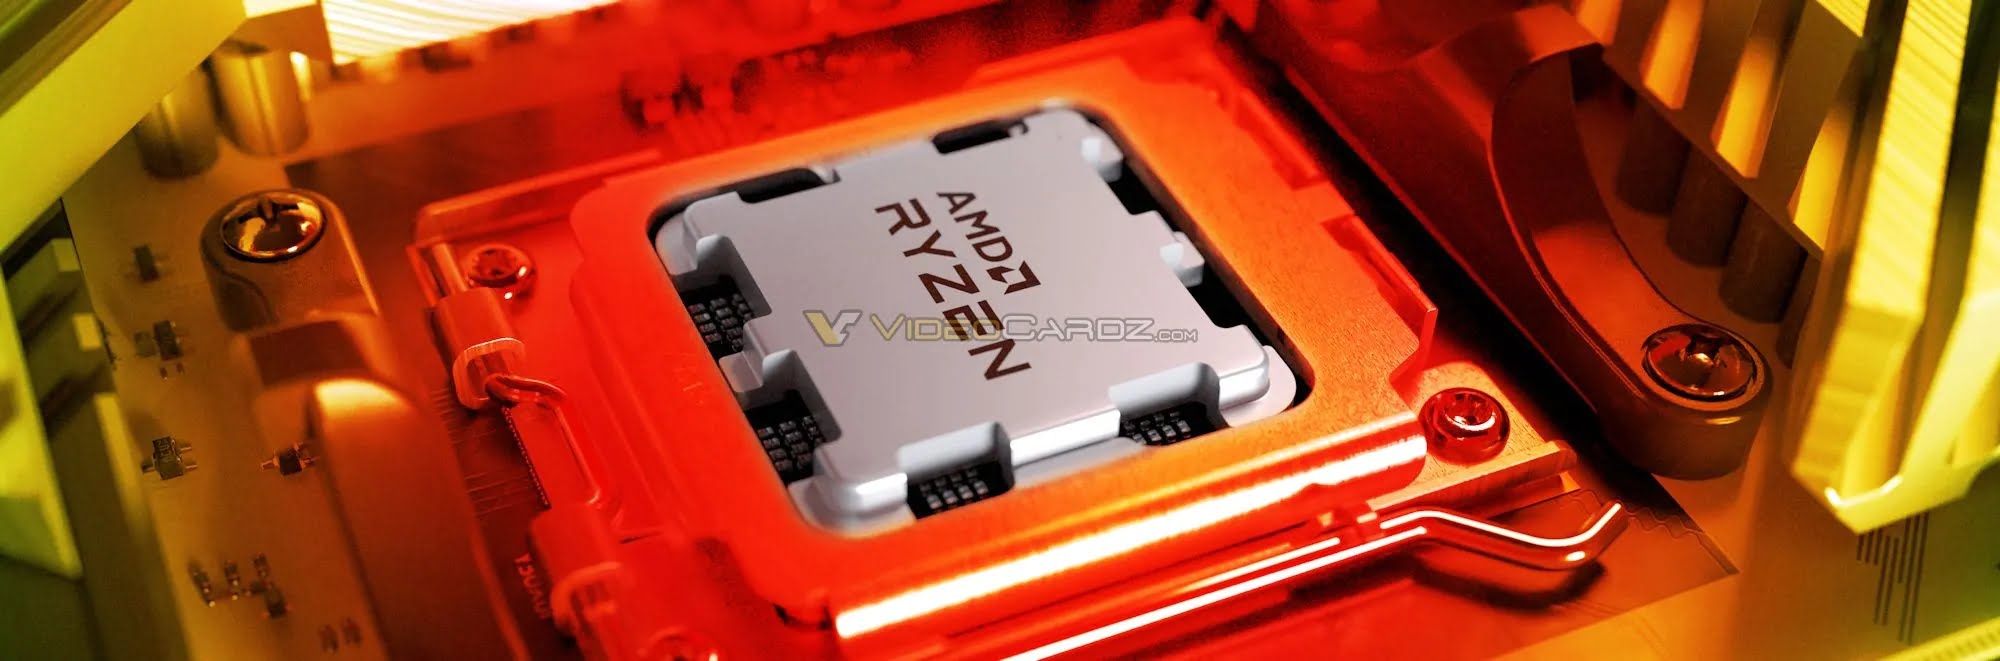 Tin đồn: AMD có thể mở bán dòng chip Ryzen 7000 Series vào ngày 15/09 - Image 10